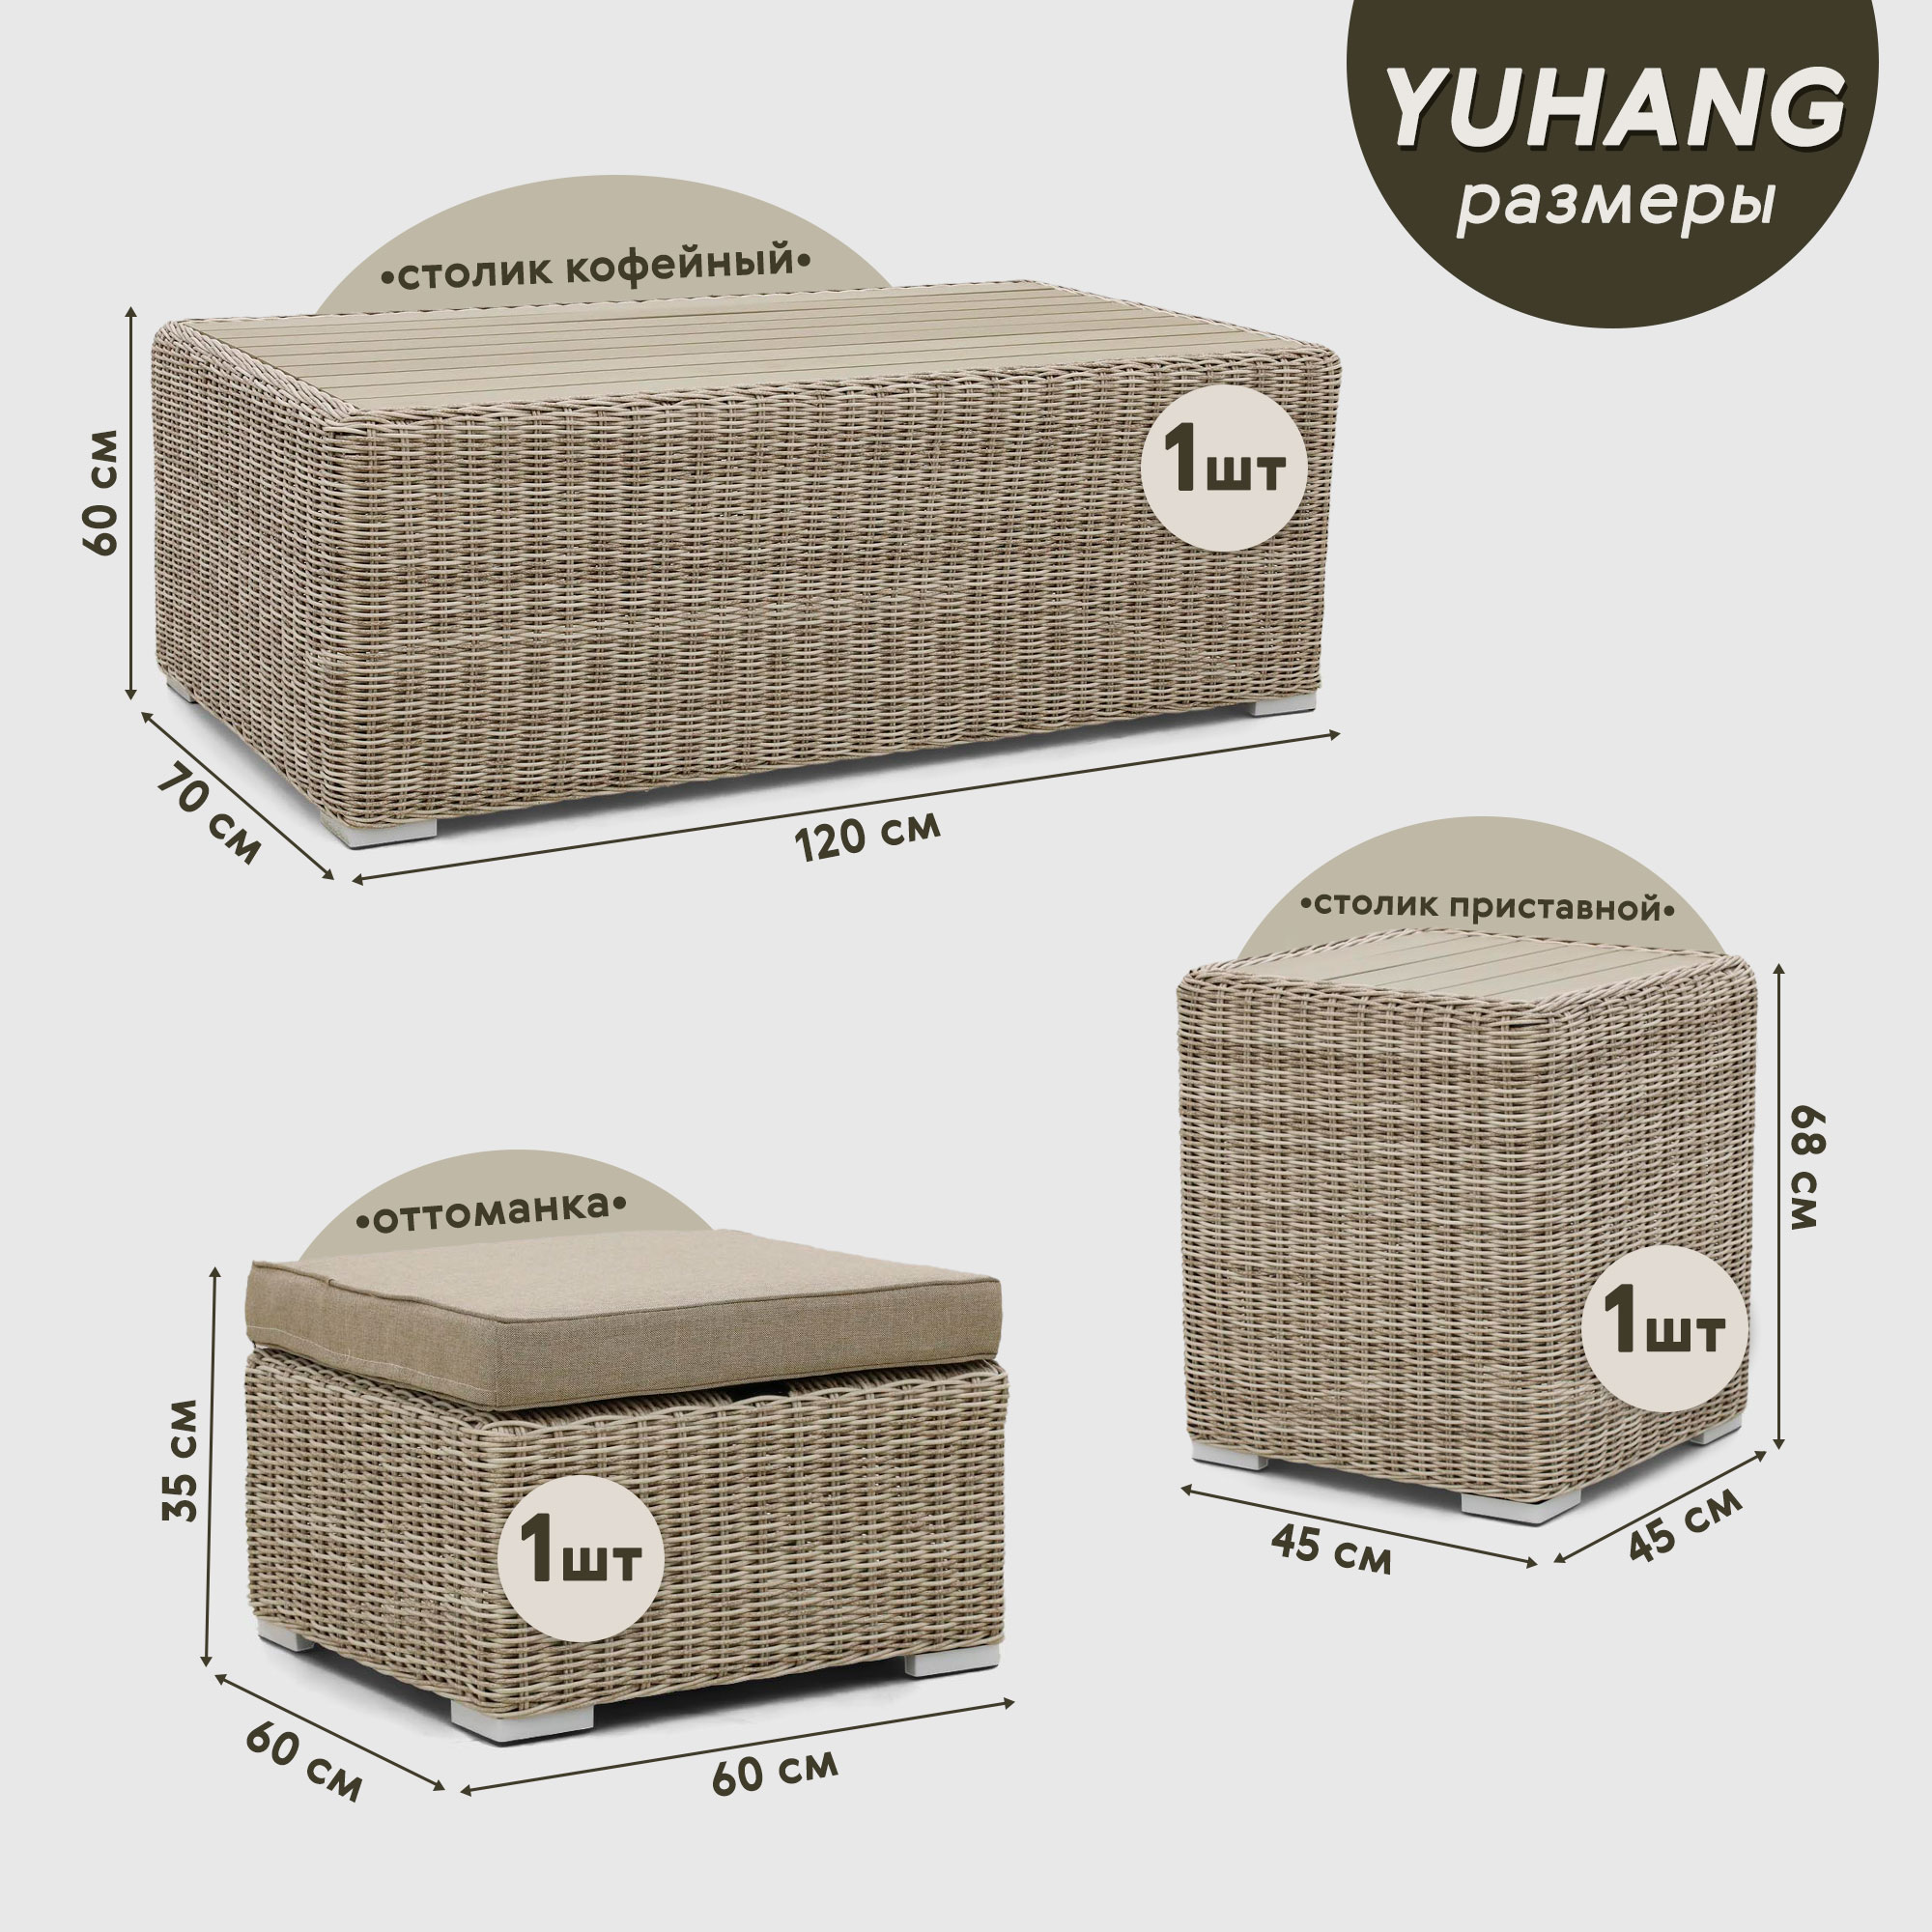 фото Комплект мебели yuhang бежево-коричневый 7 предметов